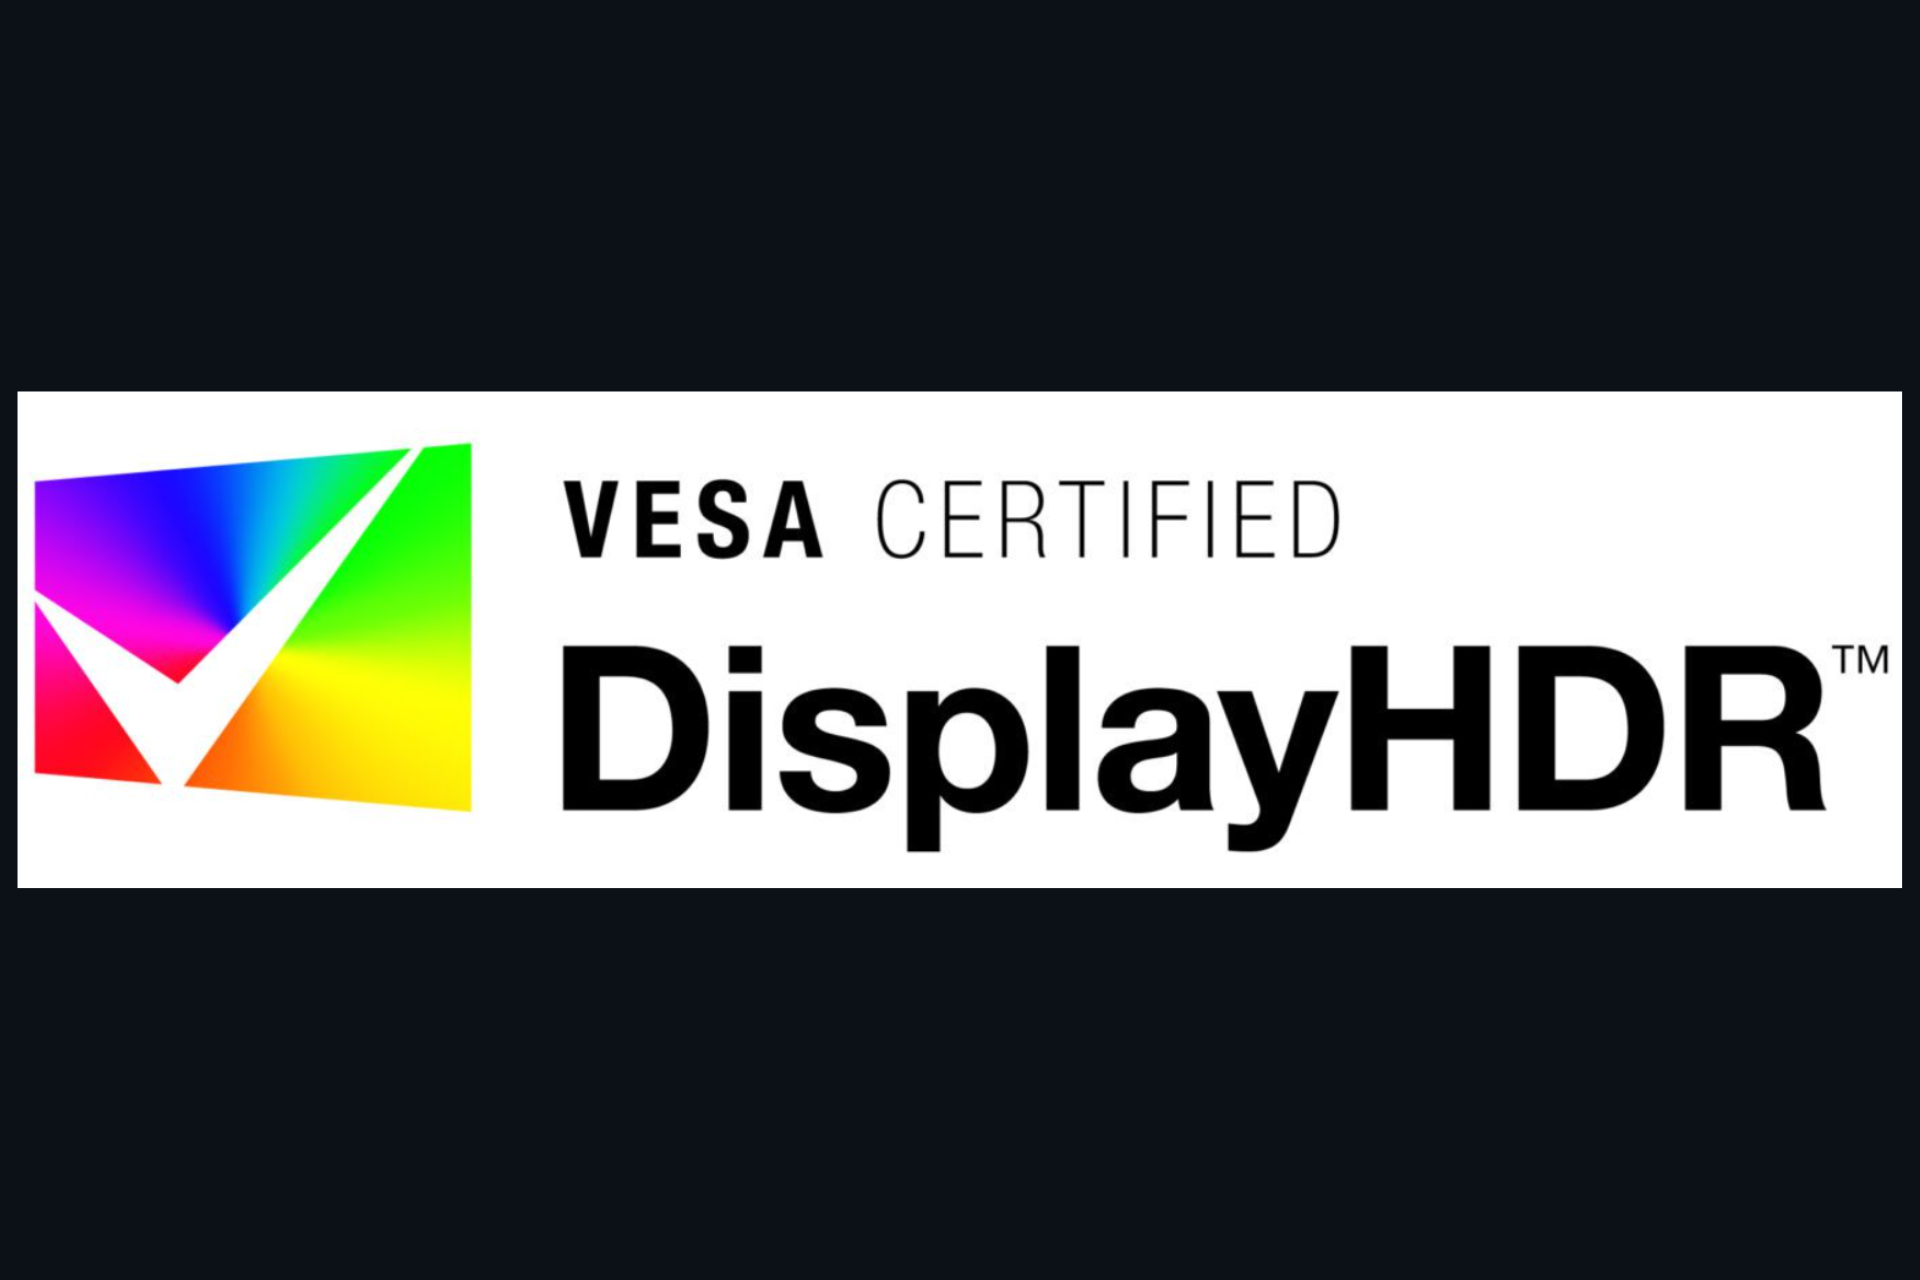 VESA updated DisplayHDR specifications